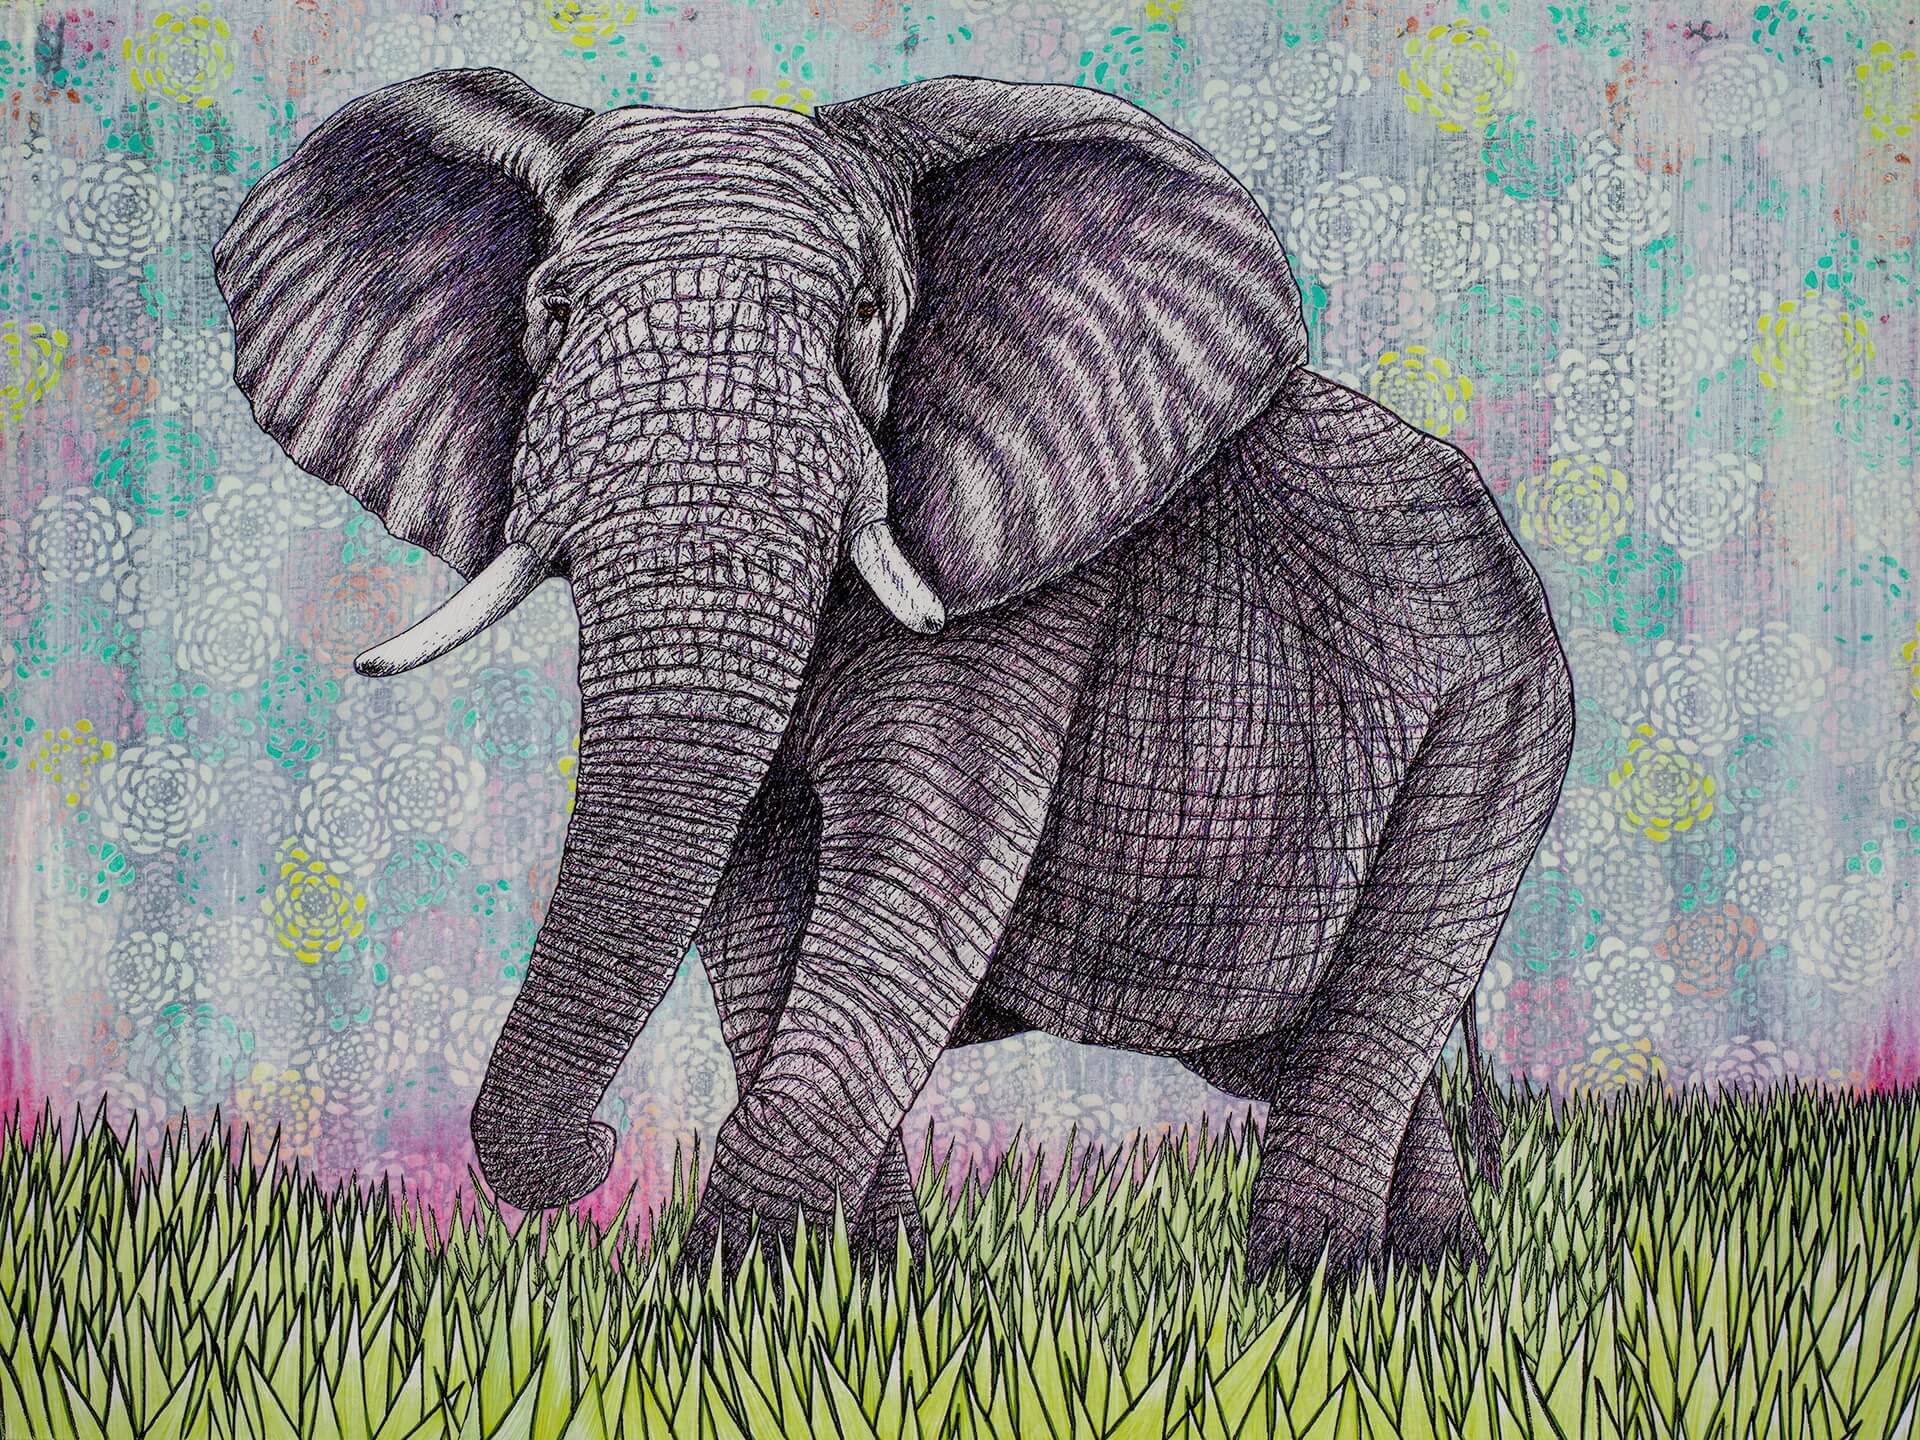 ‘Elephant’, 40” x 30”, $800